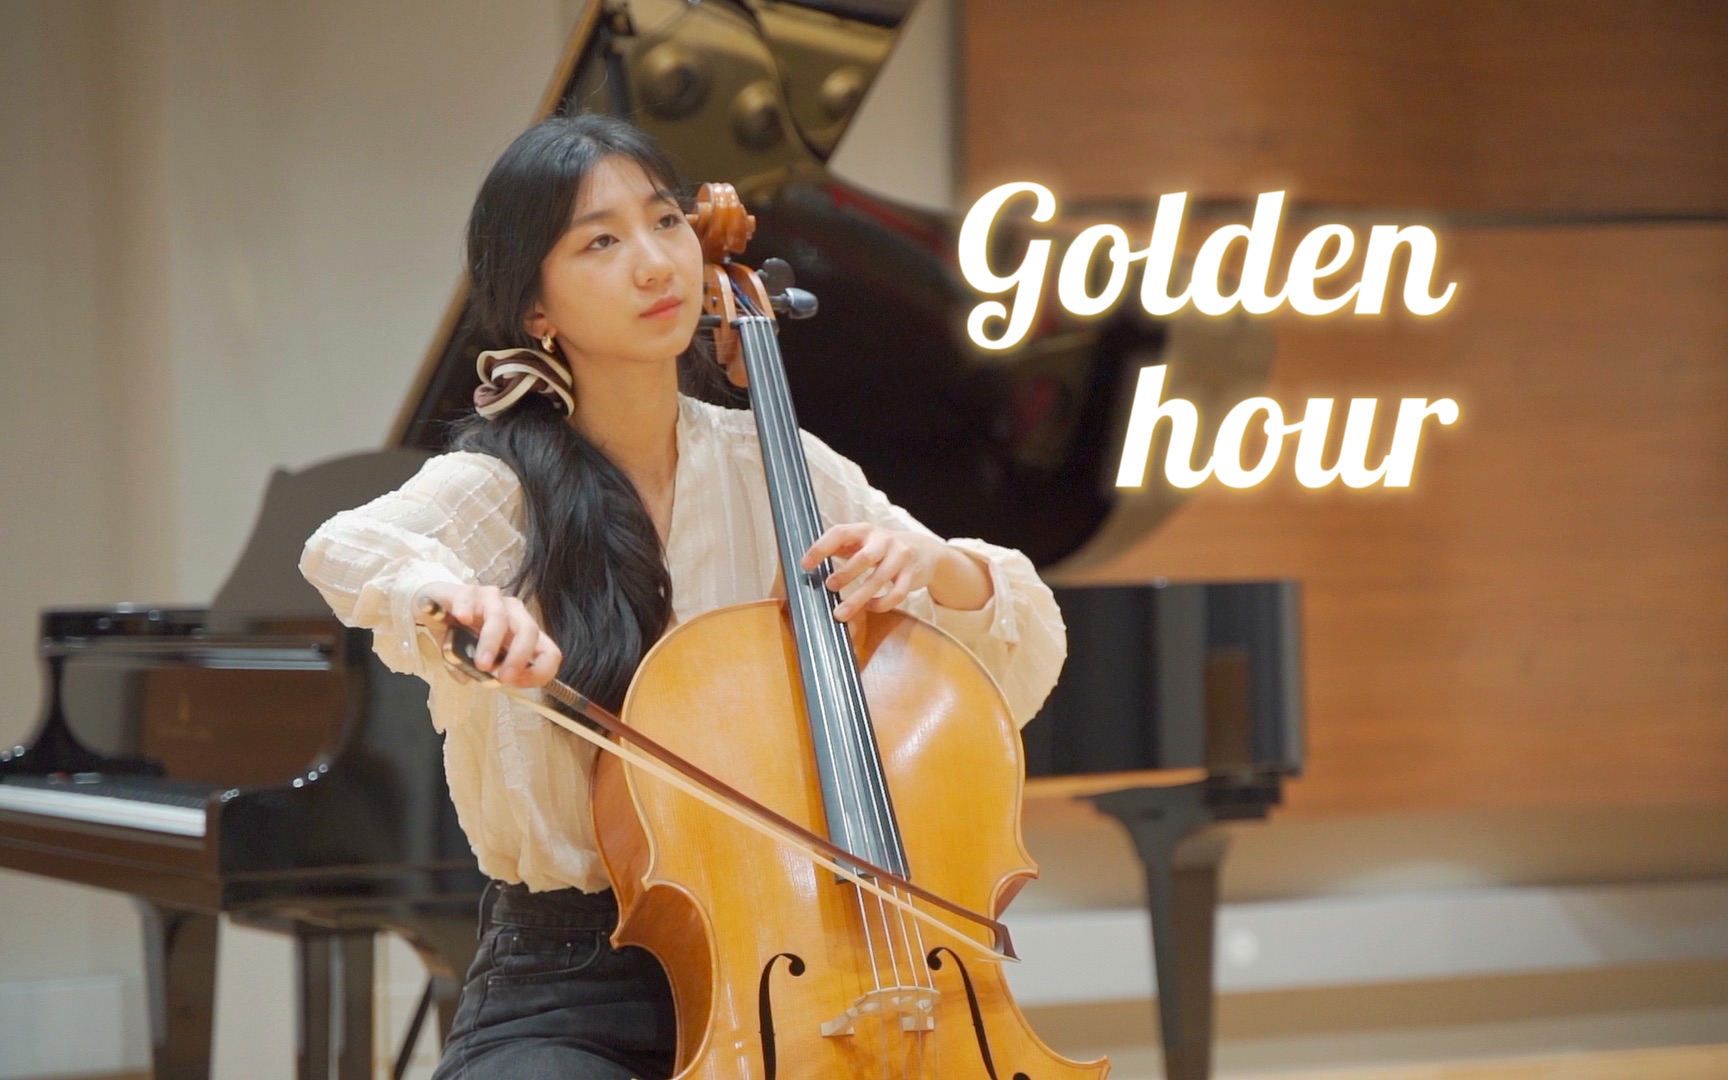 【大提琴】Golden hour丨即使没有光 你也如此璀璨